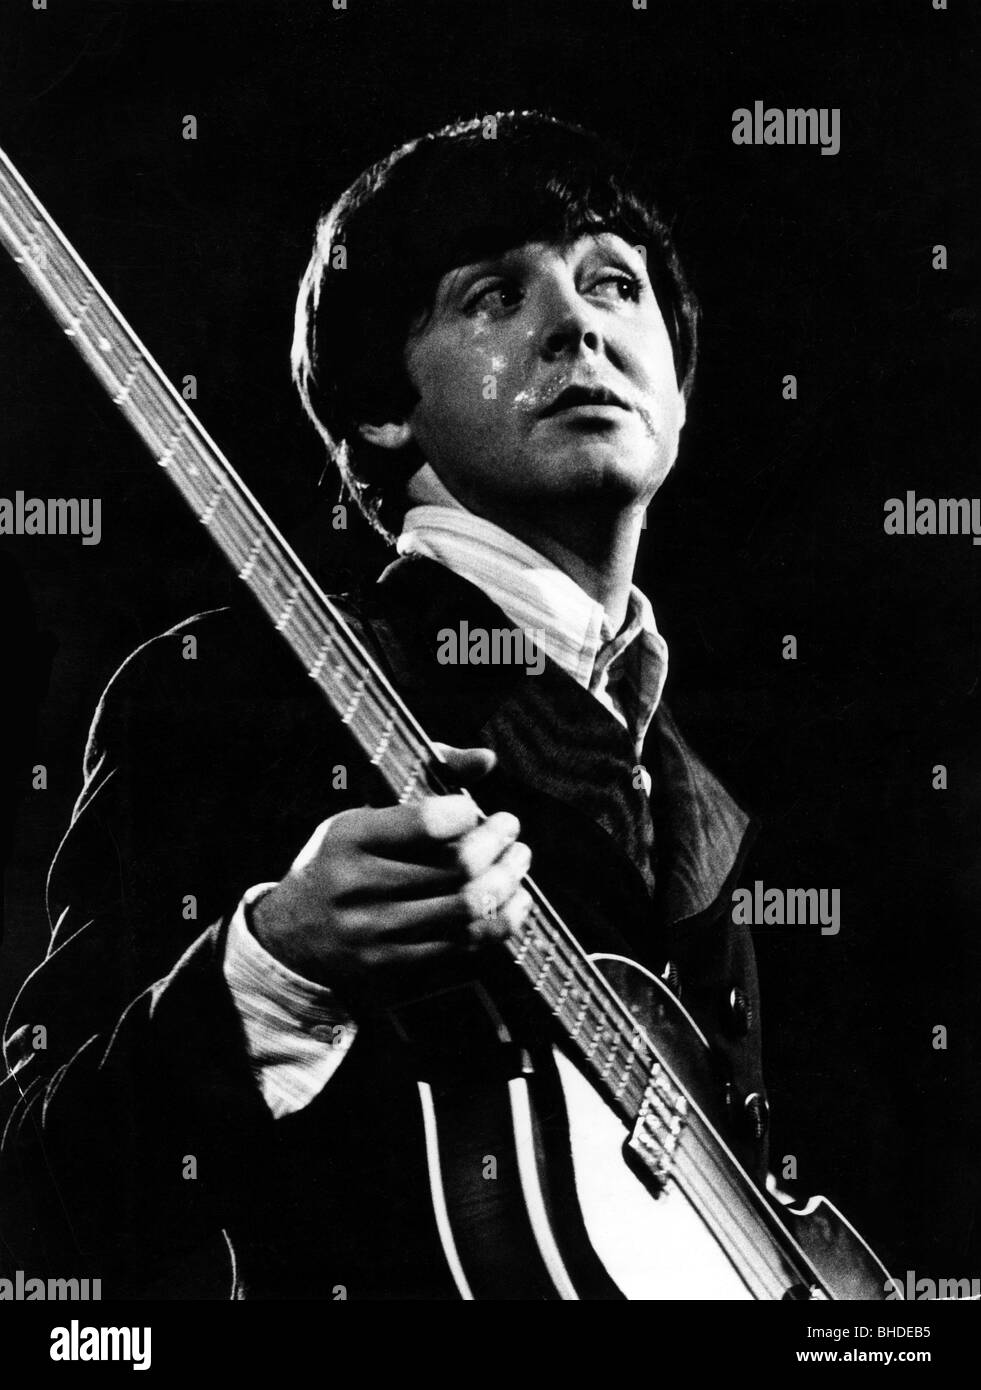 McCartney, Paul, * 18.6.1942, chanteur et musicien britannique, (The Beatles), demi-longueur, chantant, en concert, 1966, 1960, concert, spectacle, spectacle, sur scène, Banque D'Images